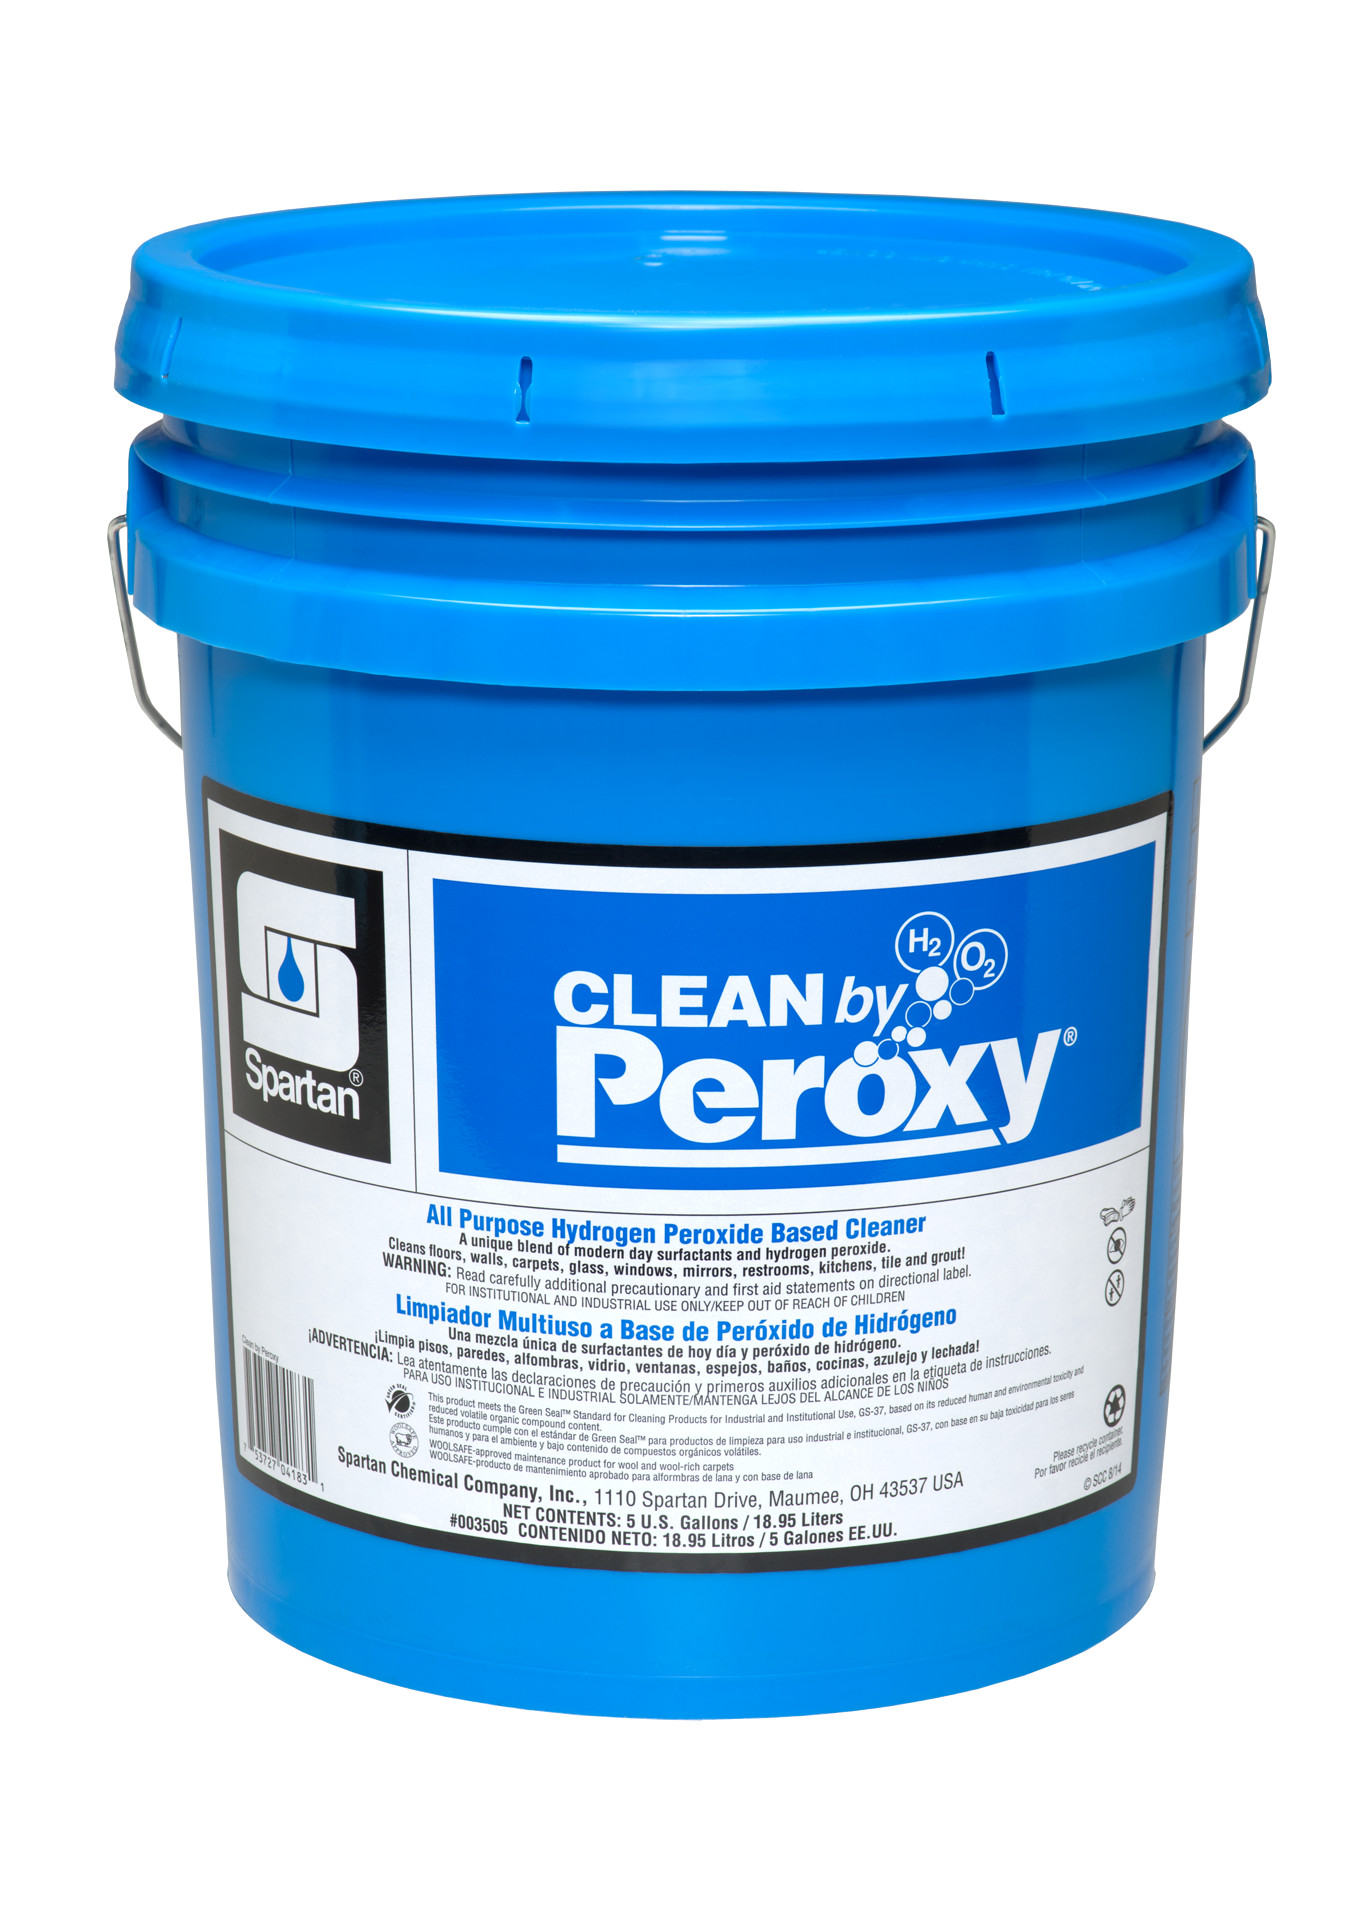 Clean+by+Peroxy+%7B5+gallon+pail%7D